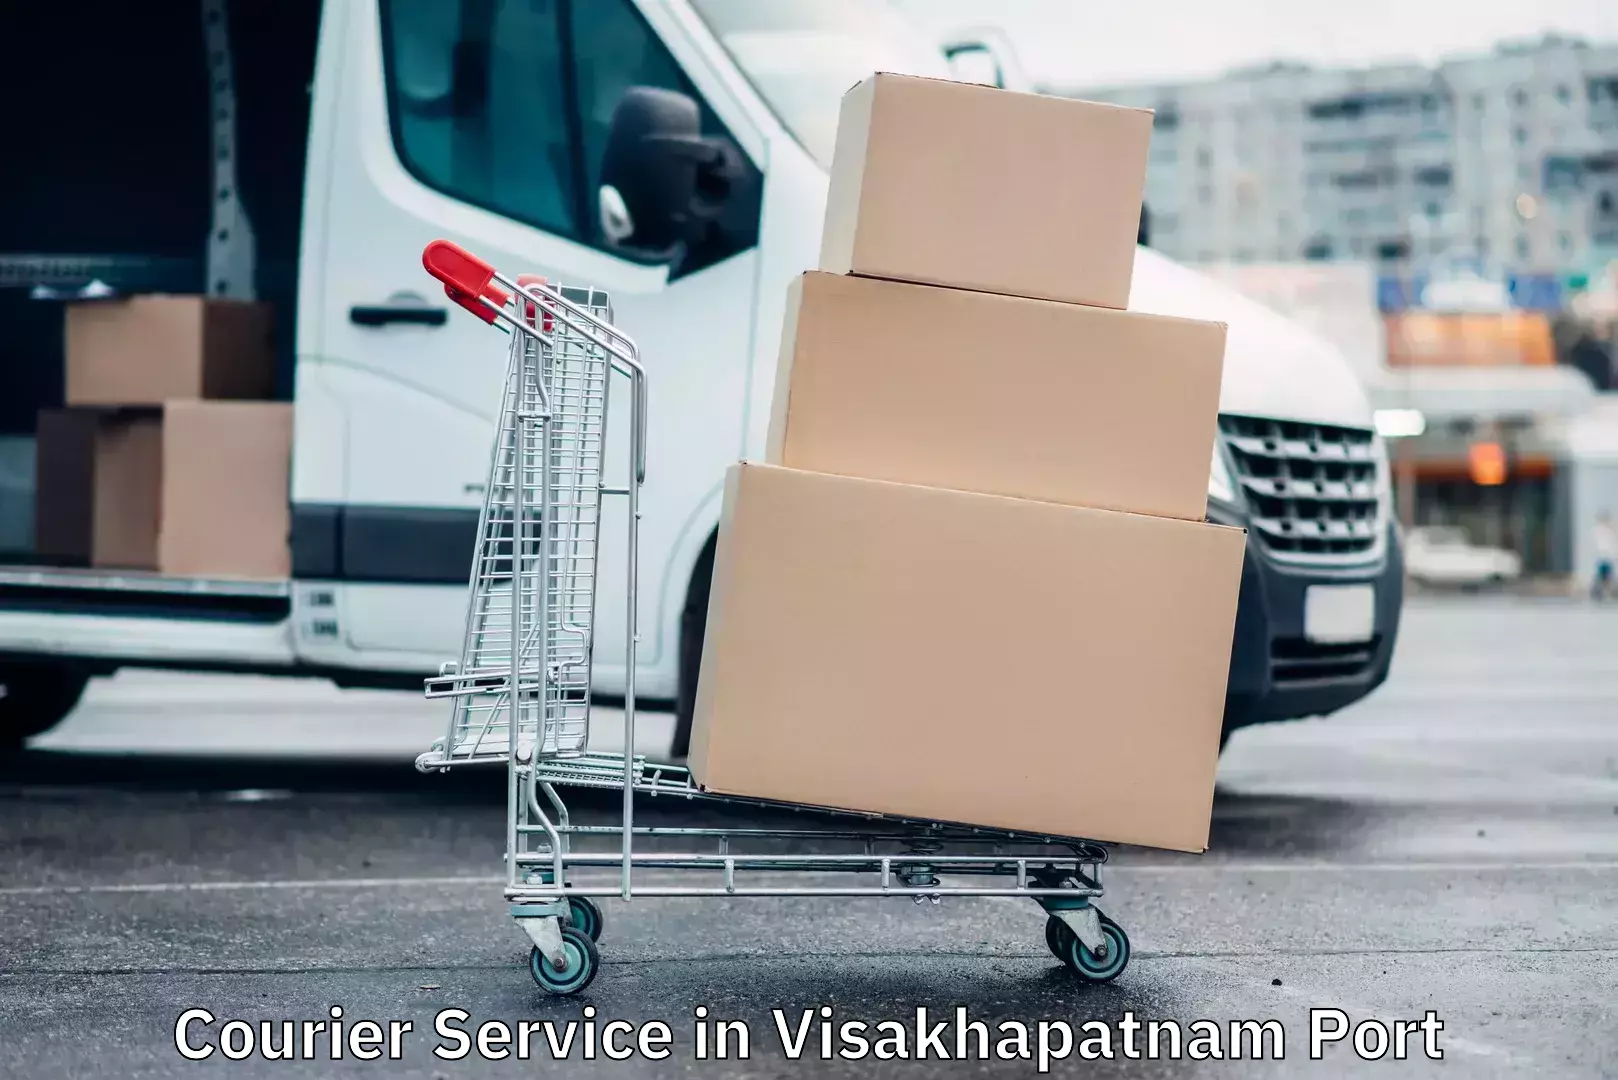 Parcel service for businesses in Visakhapatnam Port